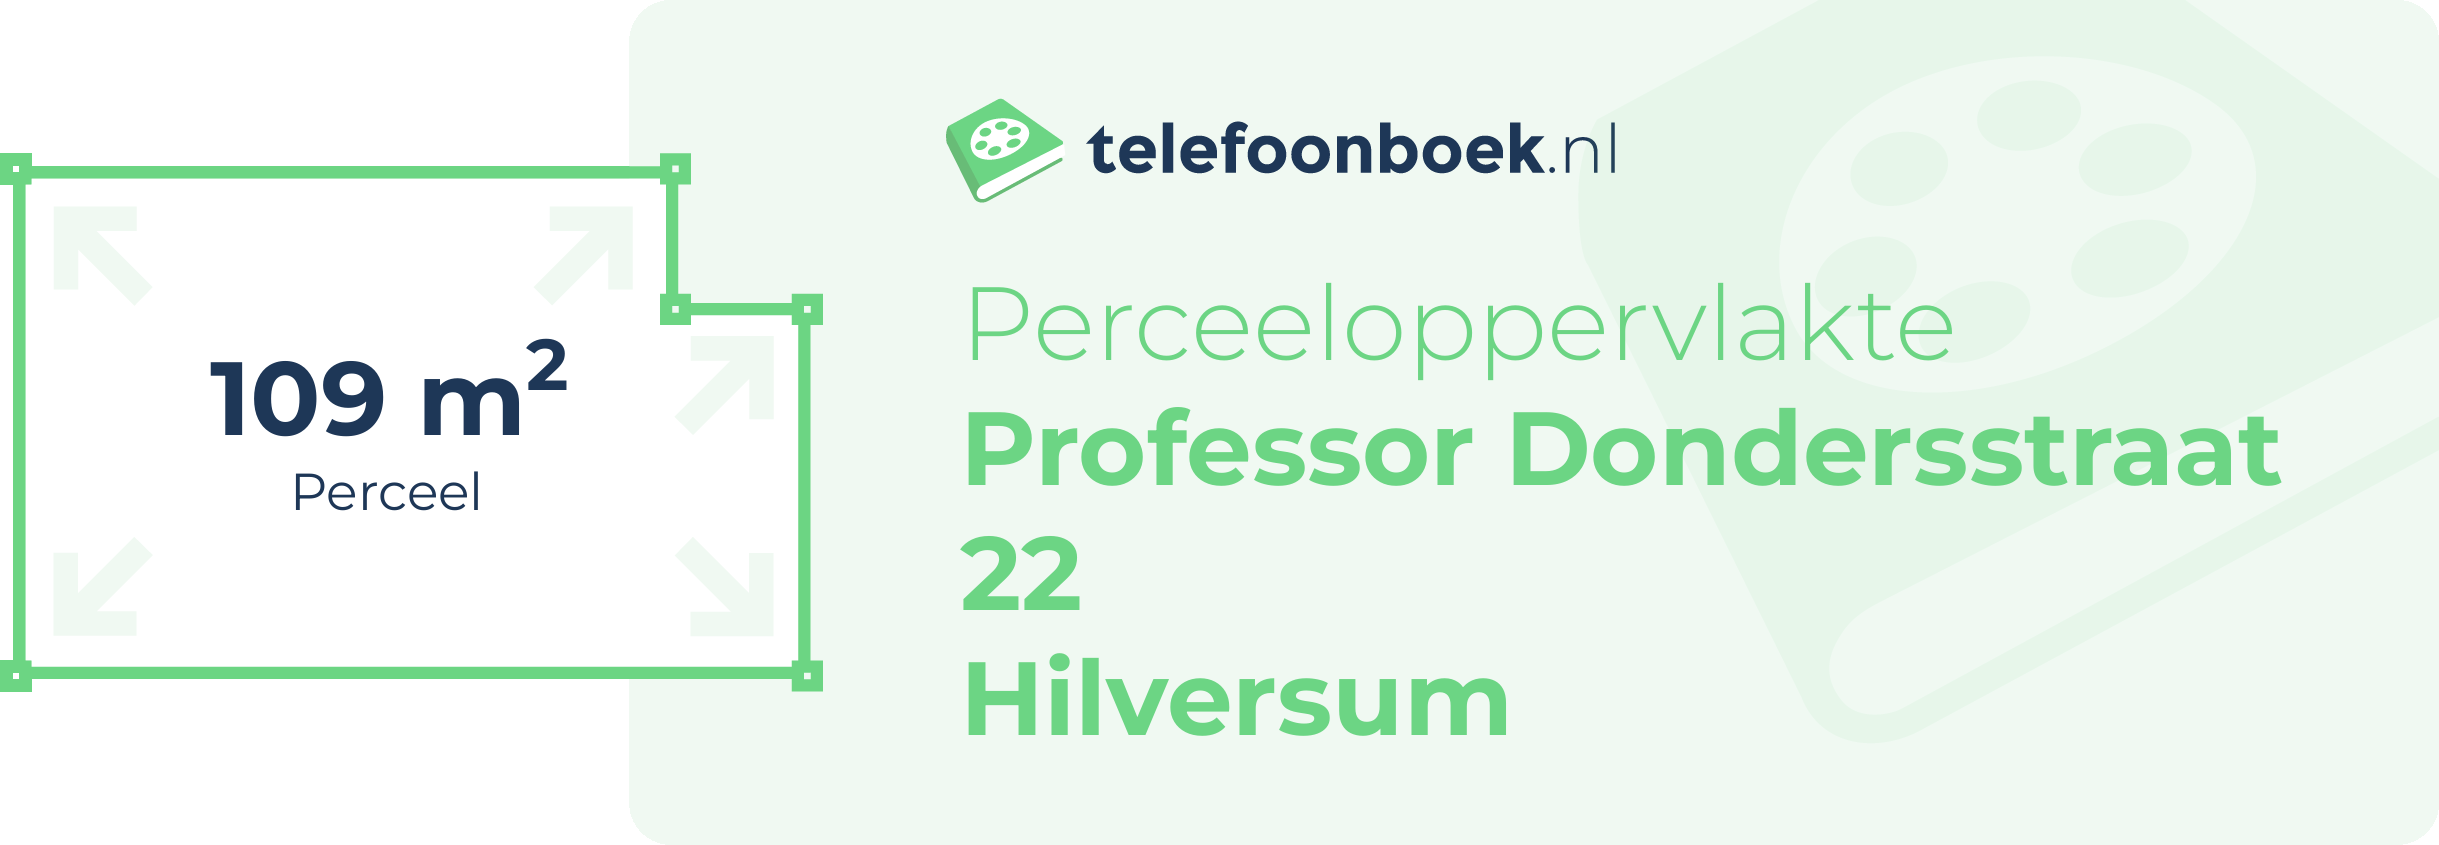 Perceeloppervlakte Professor Dondersstraat 22 Hilversum